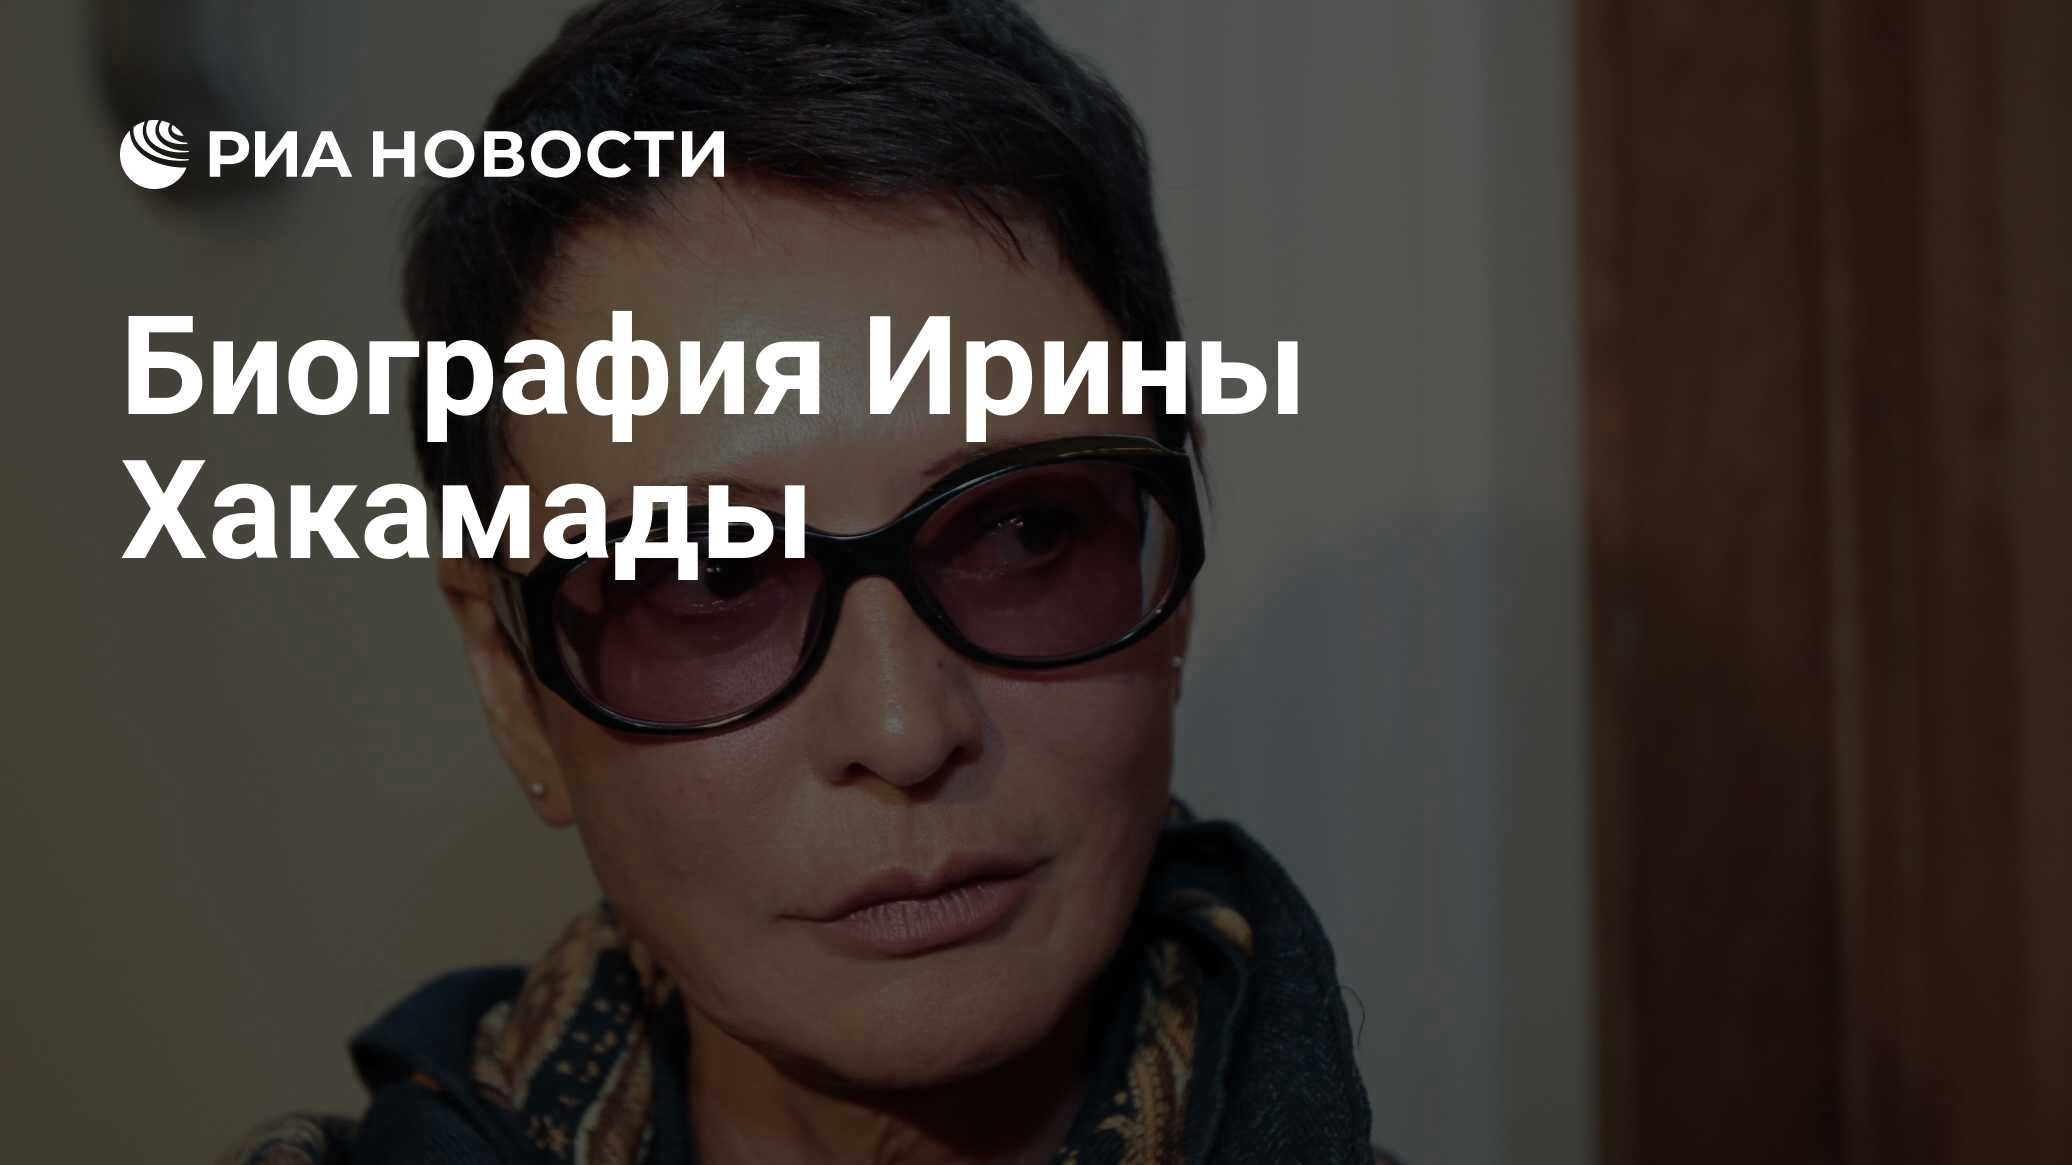 Биография Ирины Хакамады - РИА Новости, 02.03.2020